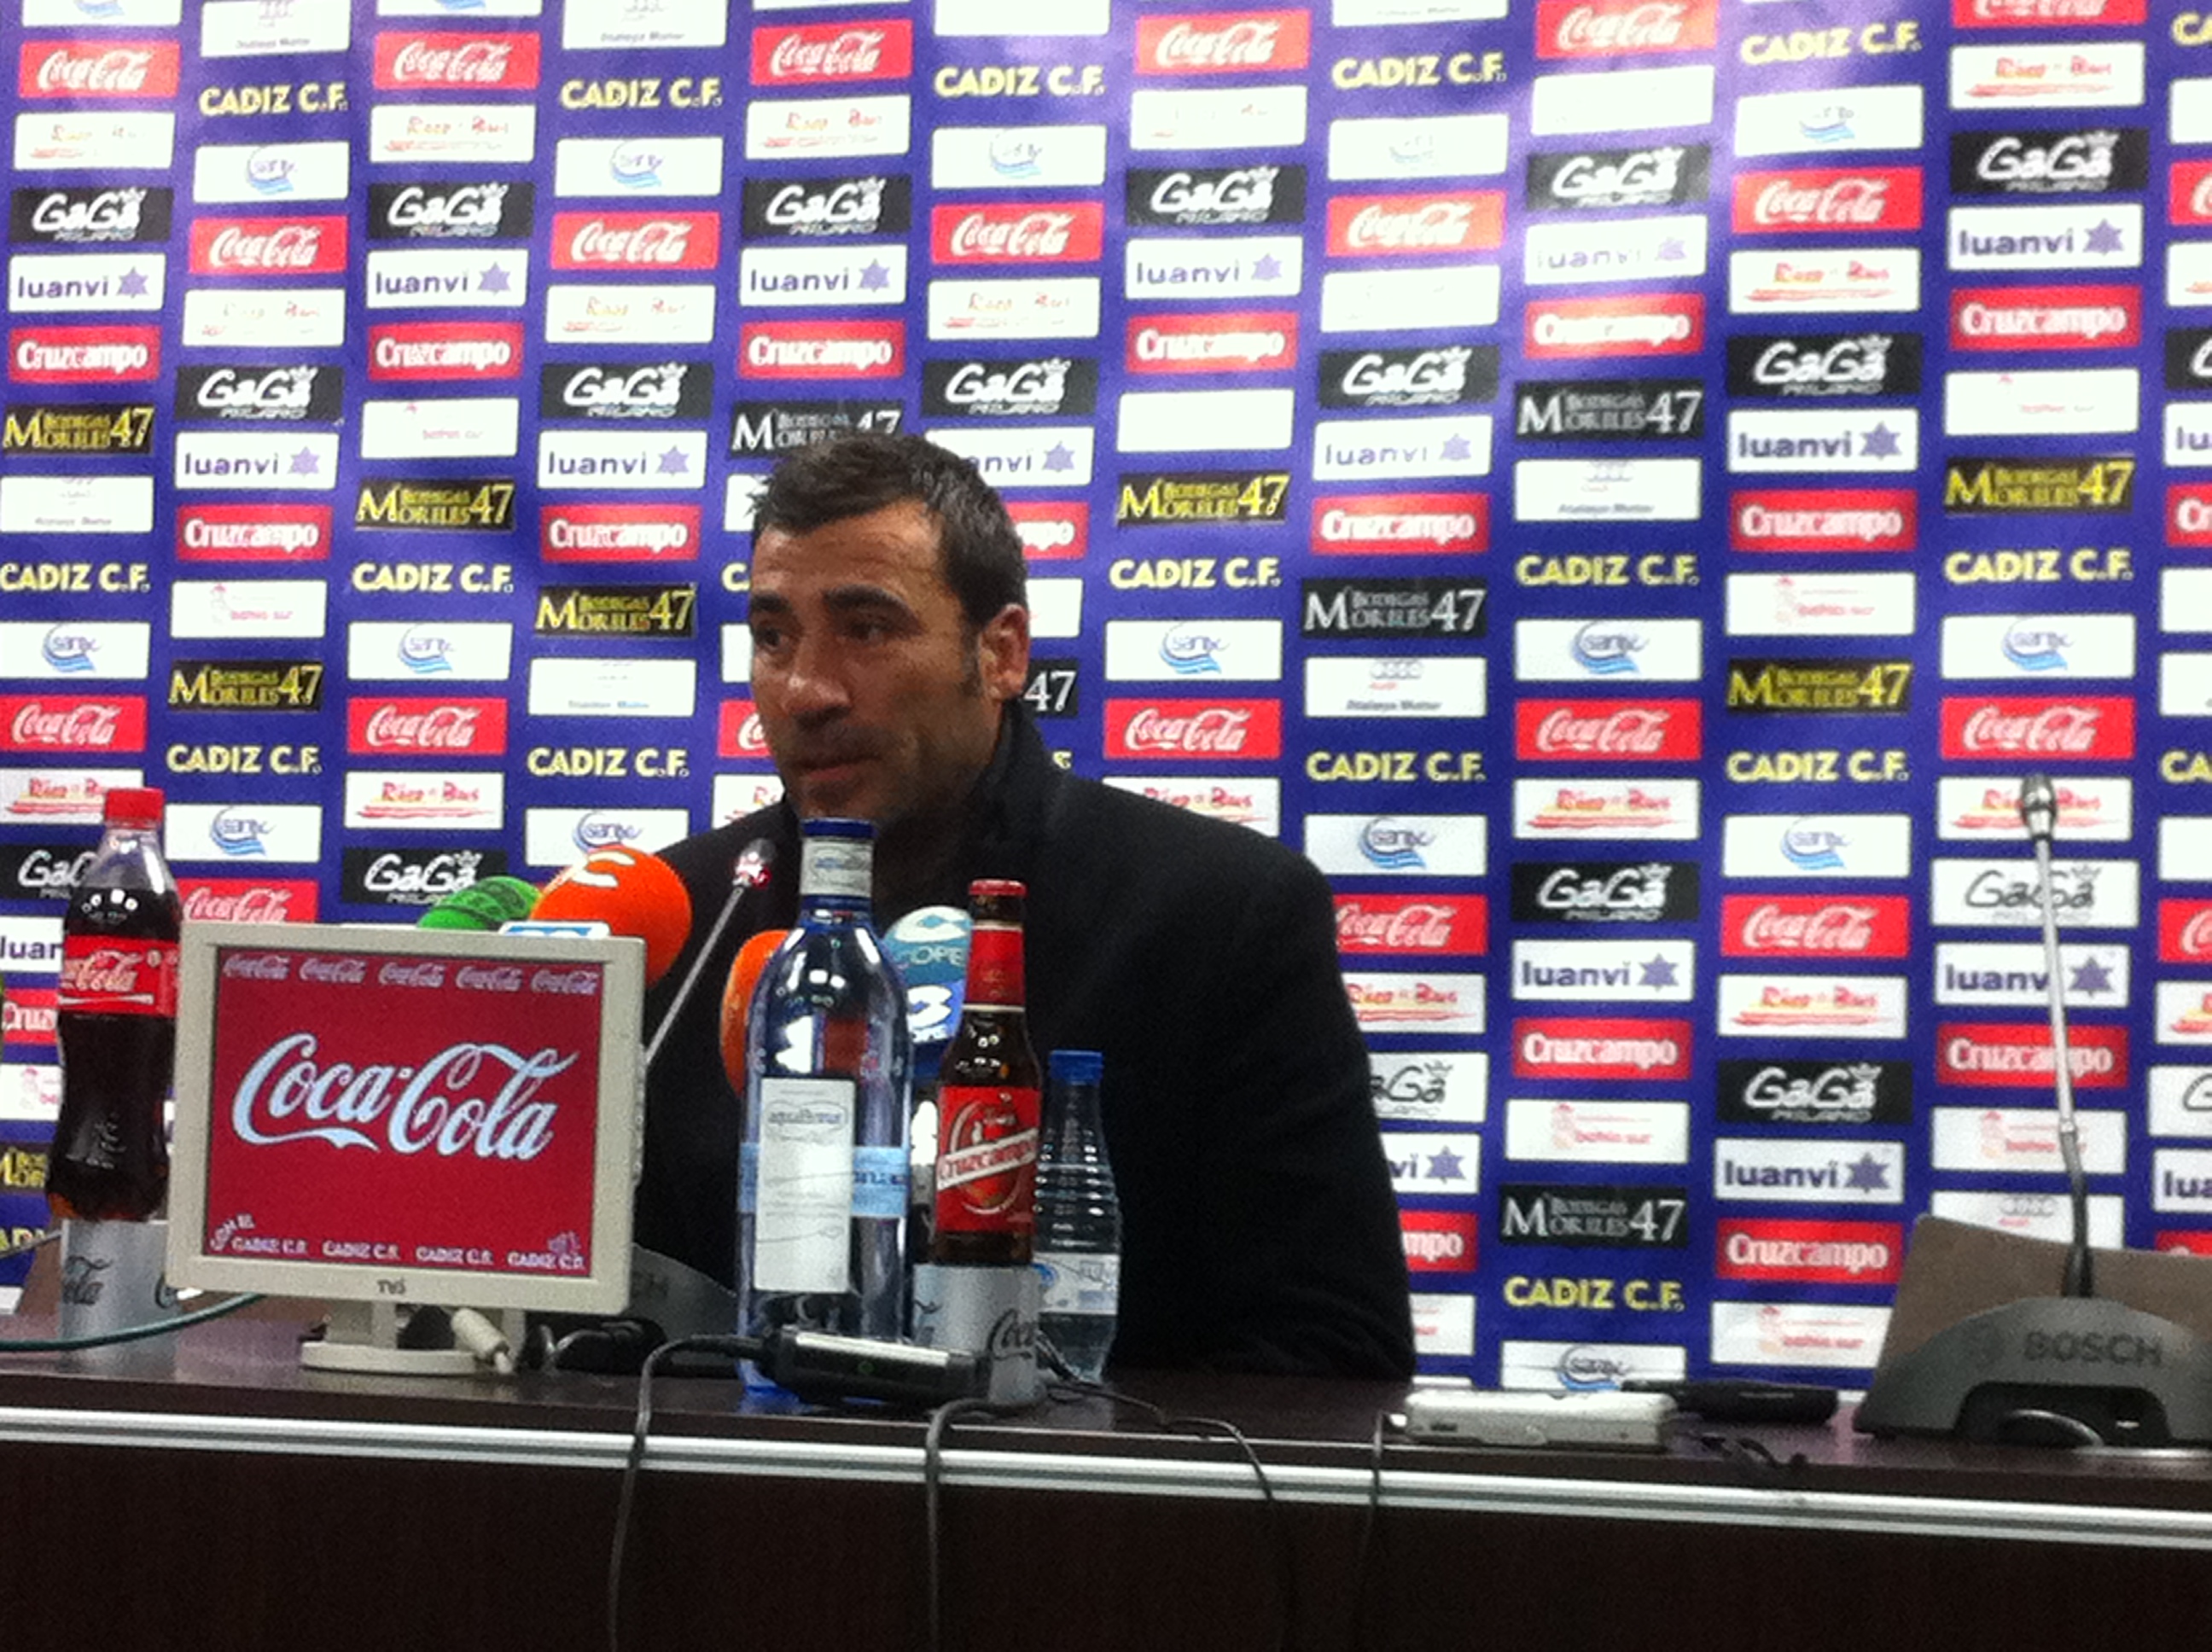 Raúl Agné: "El juego ha sido muy bueno pero al final el resultado es el que manda"